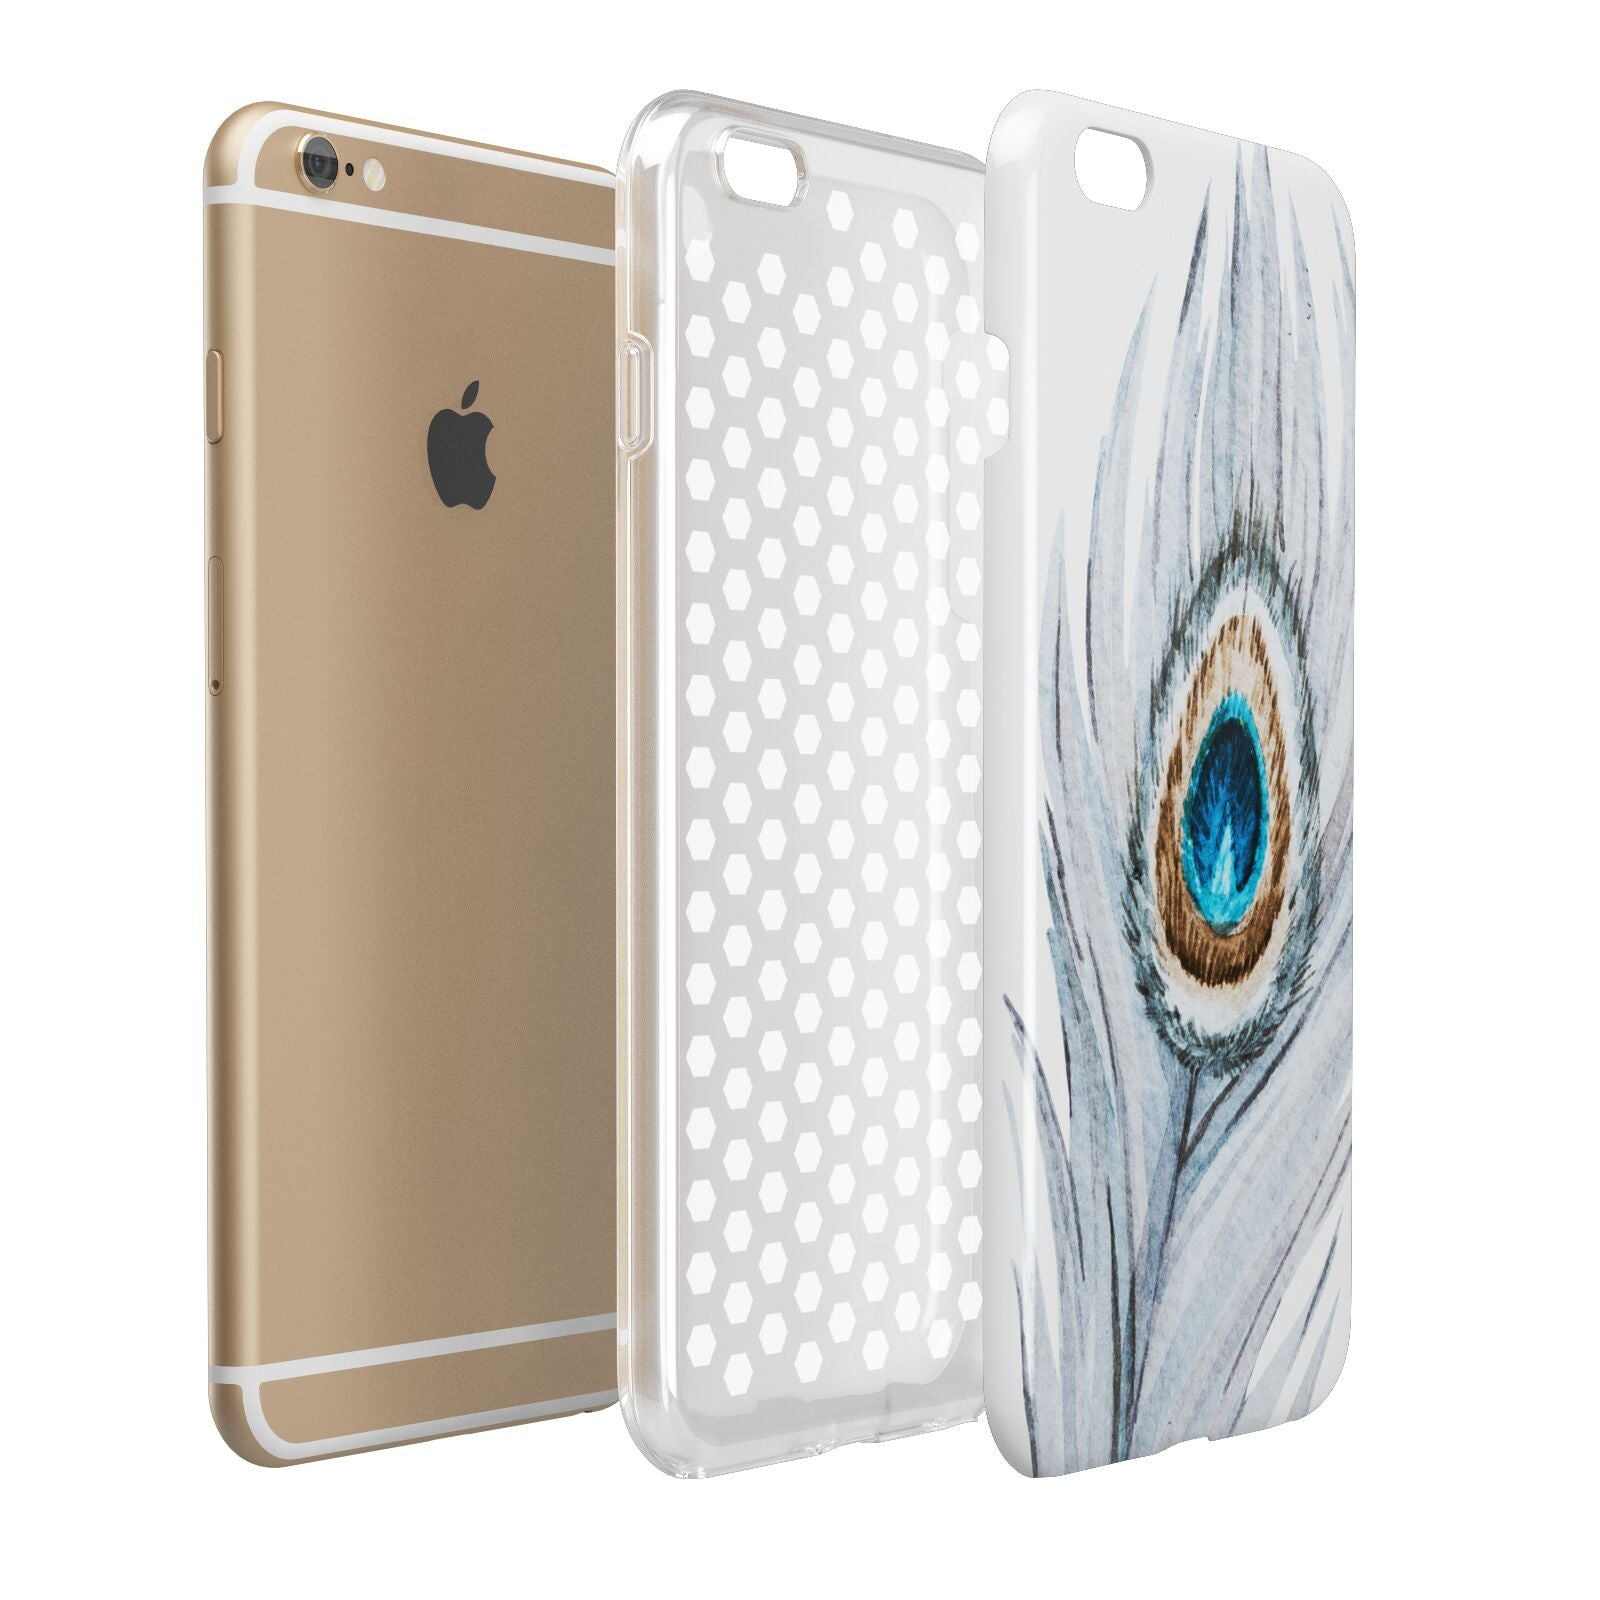 Peacock Apple iPhone 6 Plus 3D Tough Case Expand Detail Image